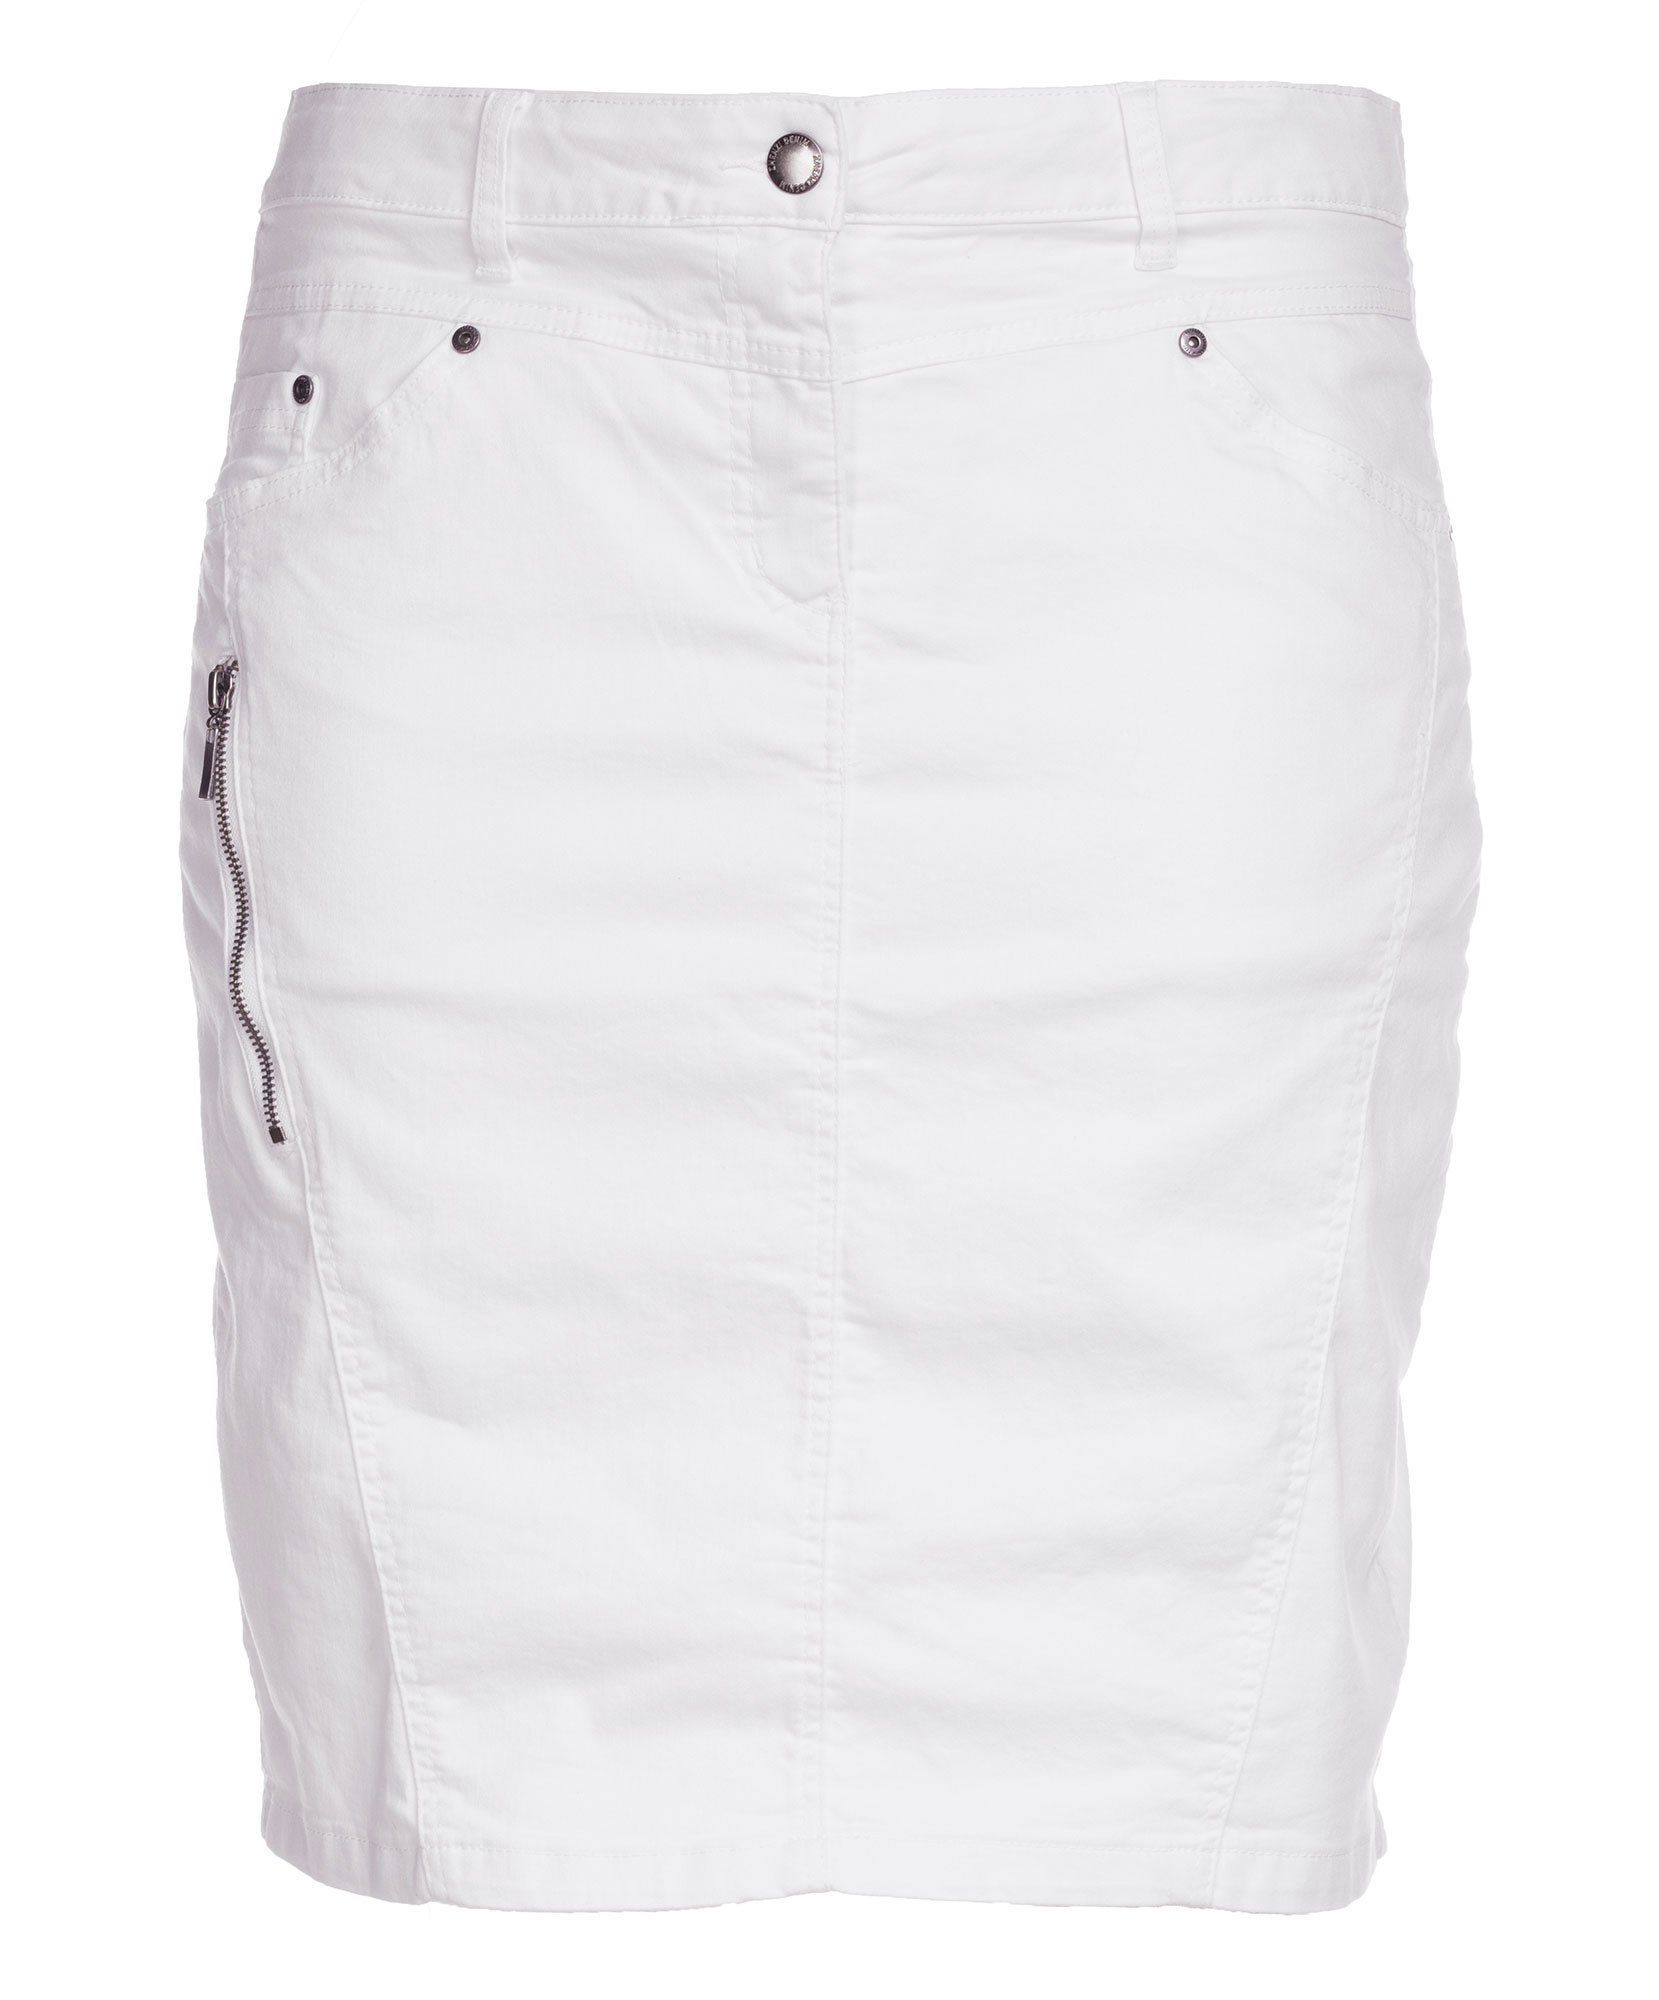 Hvid stræk nederdel med skånebukser fra Zhenzi